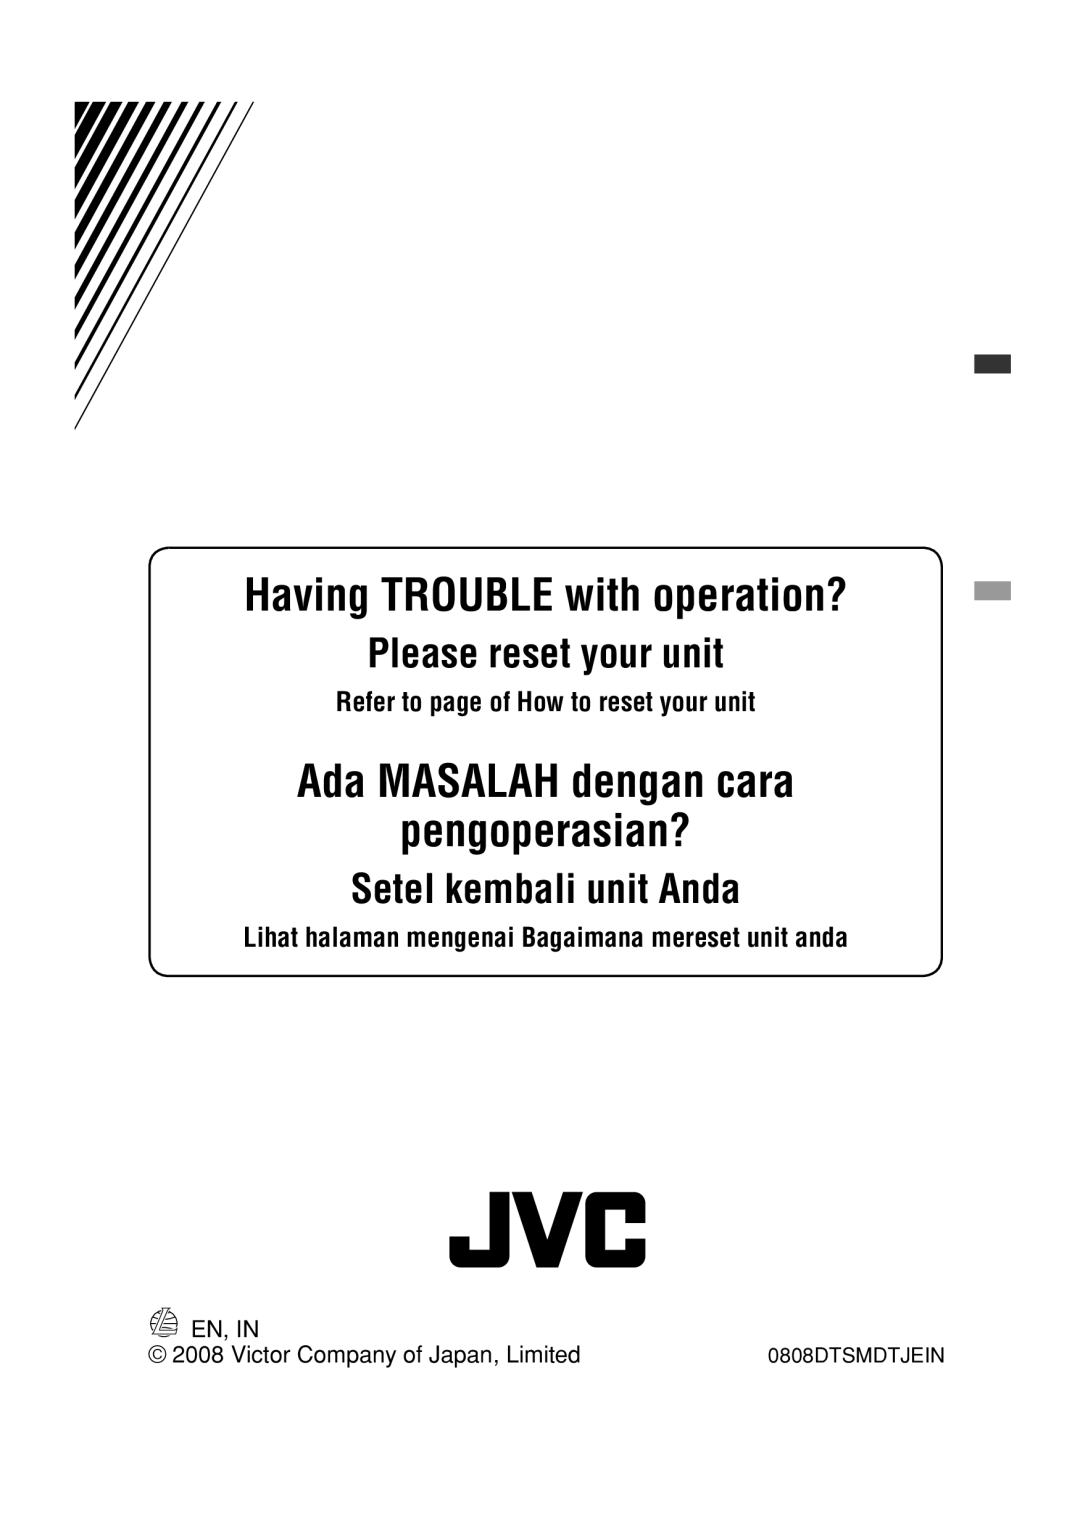 JVC KD-R301 manual Having TROUBLE with operation?, Ada MASALAH dengan cara pengoperasian?, Please reset your unit, En, In 